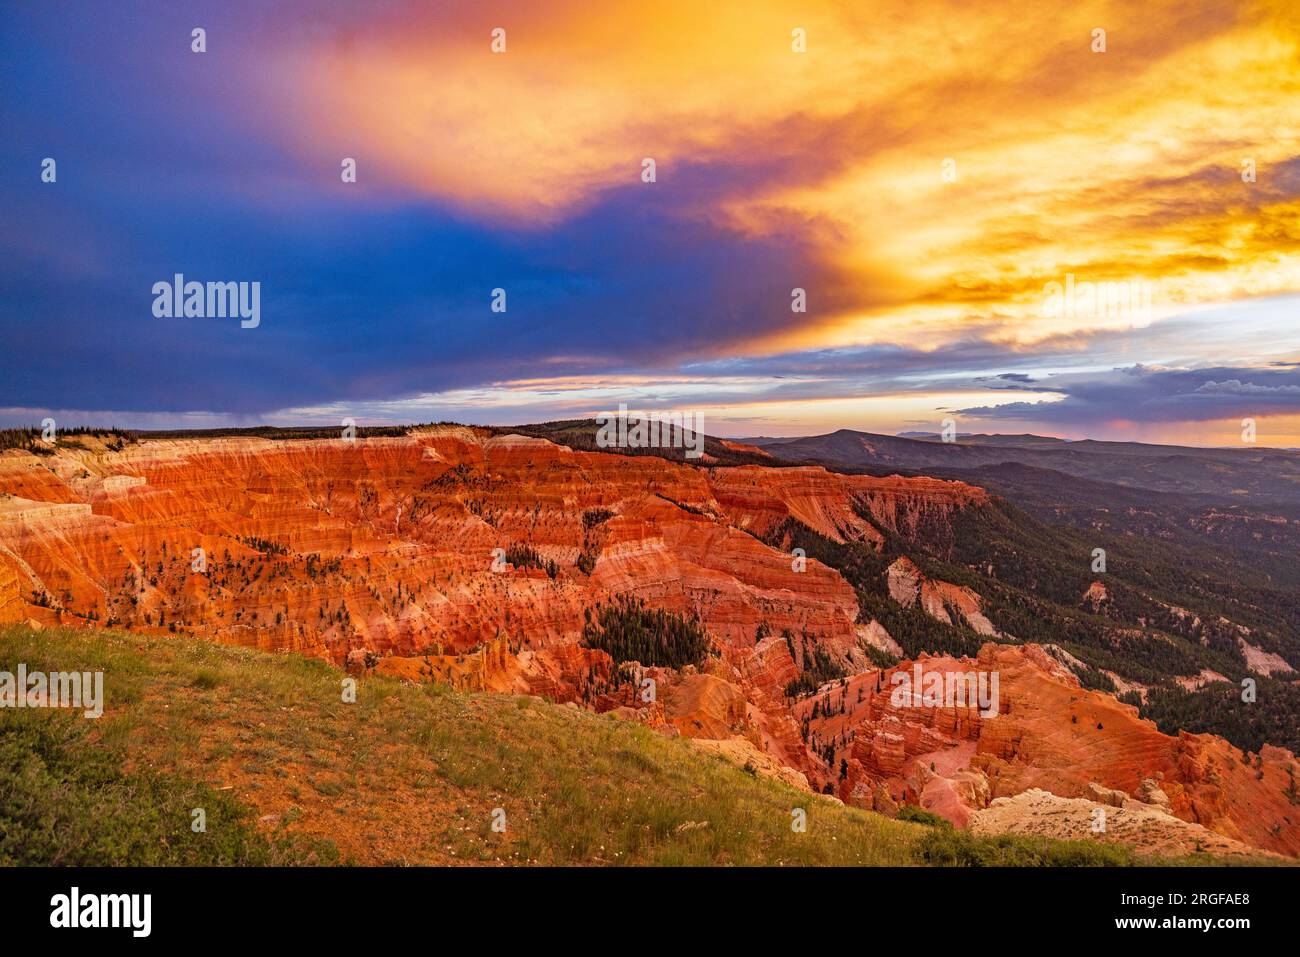 Le soleil couchant illumine les falaises rocheuses rouges et les nuages à l'est comme vu depuis Chessman Ridge Overlook du monument national de Cedar Breaks, UT, États-Unis. Banque D'Images